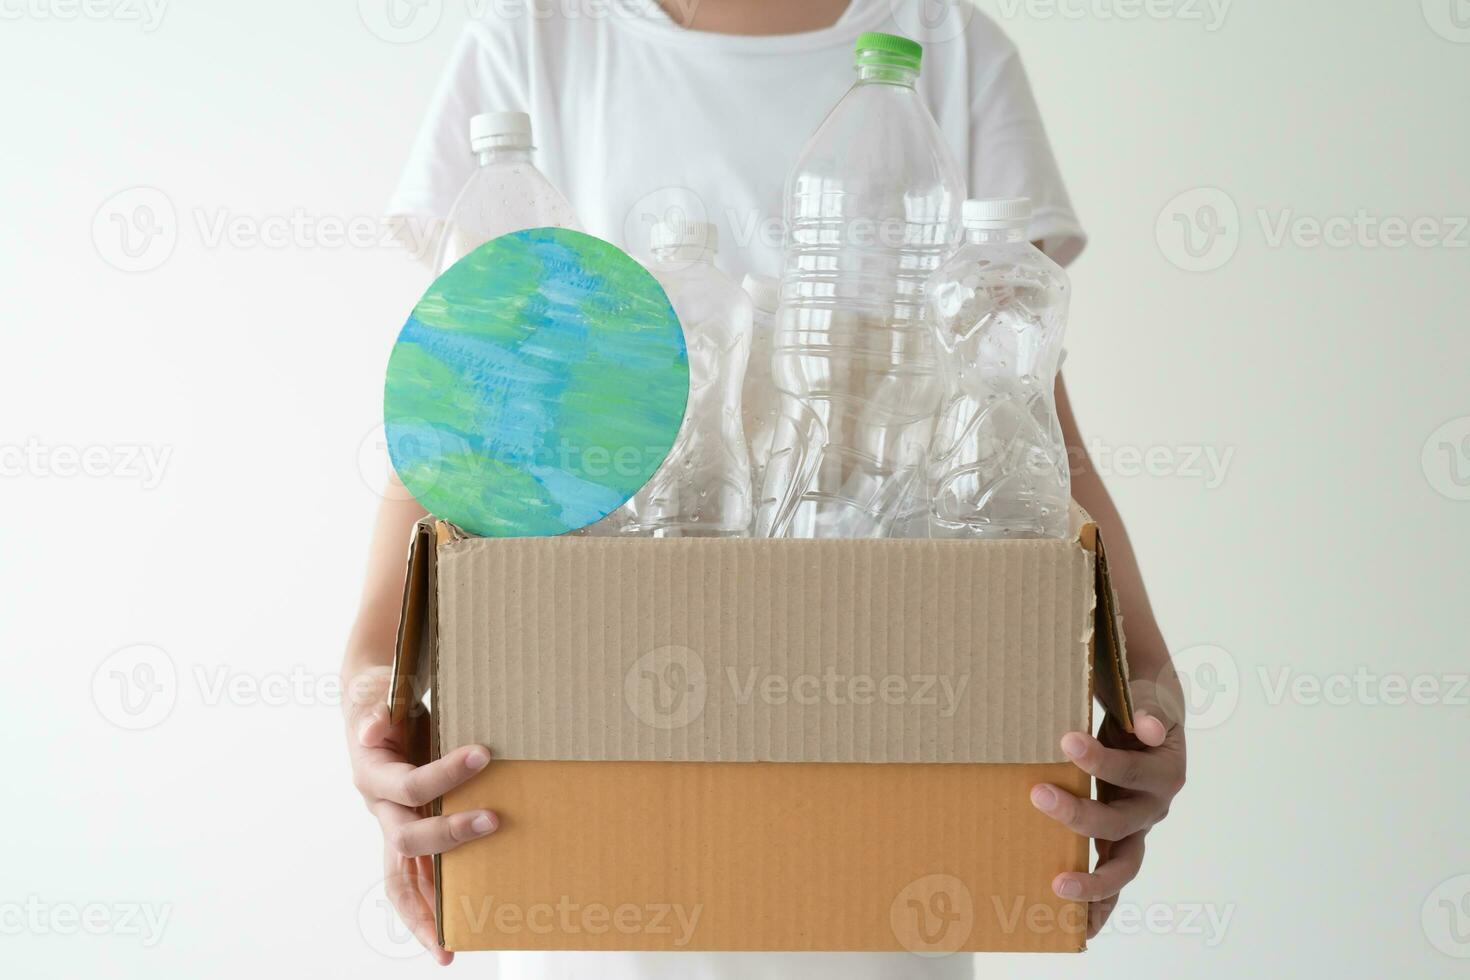 gens lancement une campagne à recycler utilisé vide Plastique bouteilles. mains en portant papier carton boîte plein avec Plastique bouteille prêt à recycler. concept de réutilisation, réduire, recycler à enregistrer le environnement photo